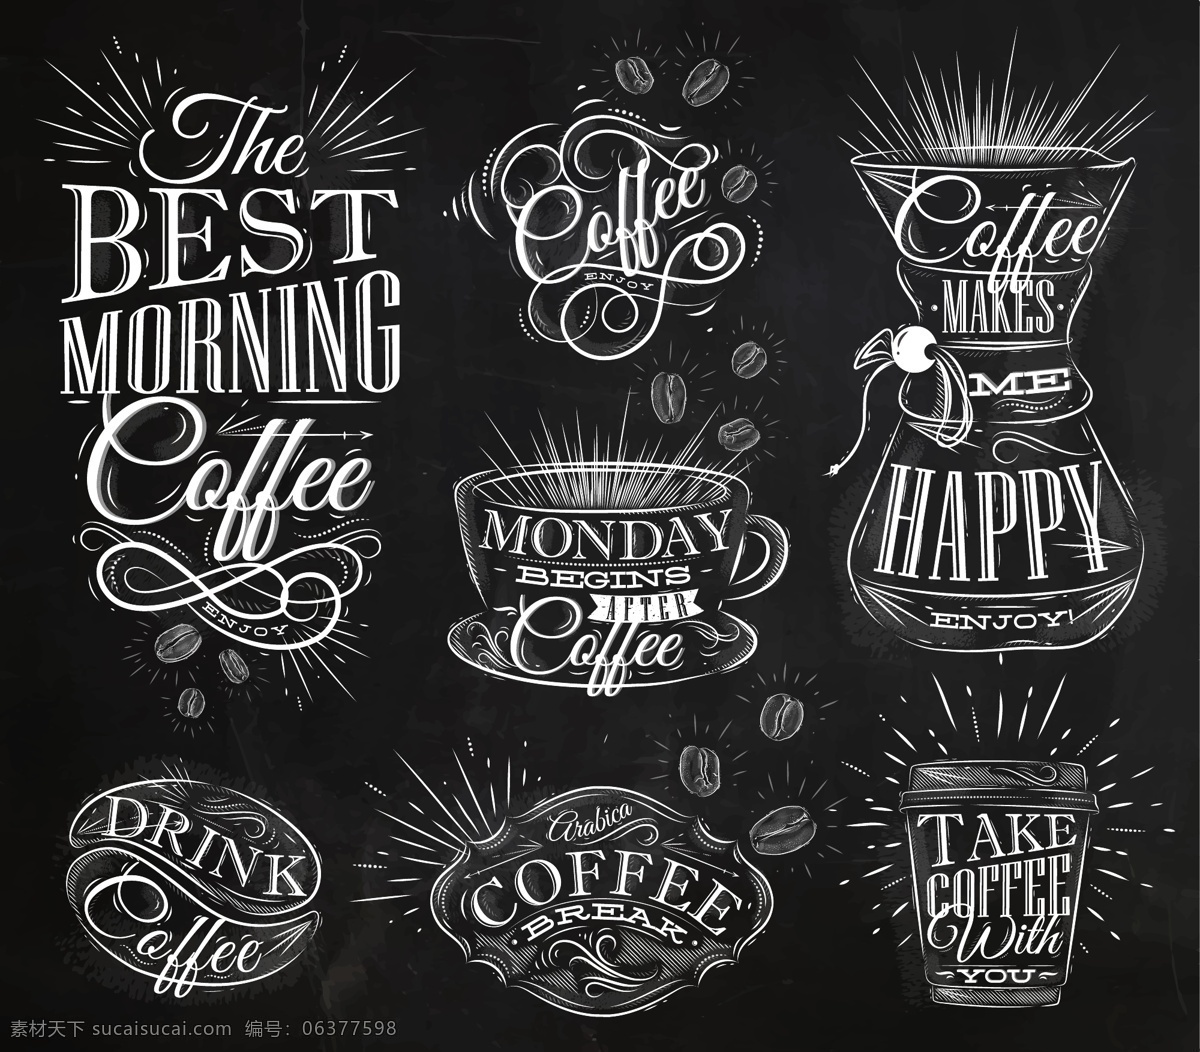 咖啡粉笔矢量 咖啡标志 粉笔矢量 粉笔咖啡 手绘粉笔画 欧式咖啡 黑板画 白色咖啡 手绘咖啡 咖啡矢量标志 咖啡logo 食物 标志图标 其他图标